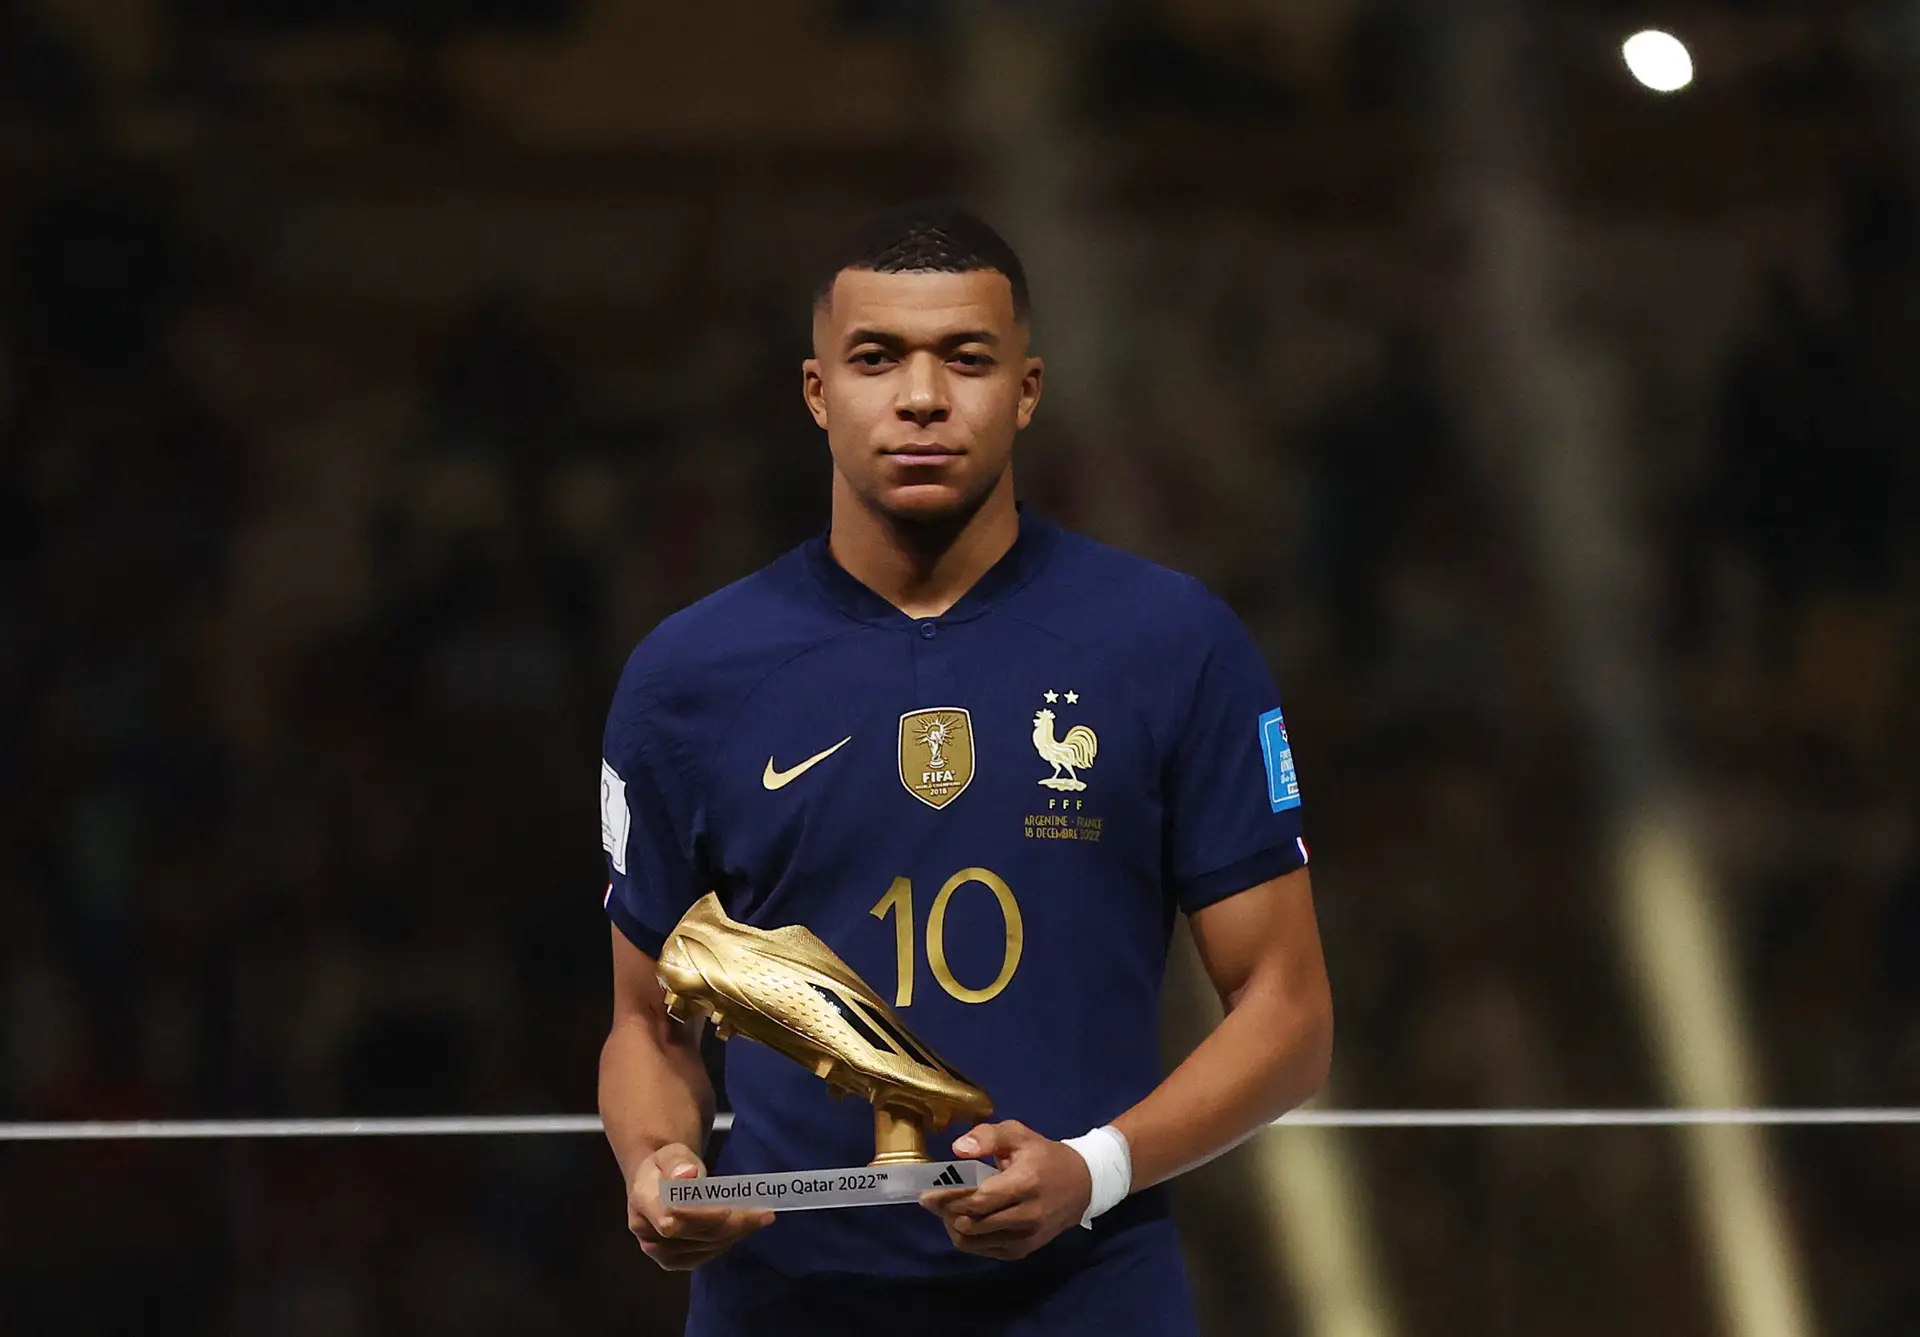 FIFA 21: EA Sports revela os 100 jogadores com notas mais altas do jogo